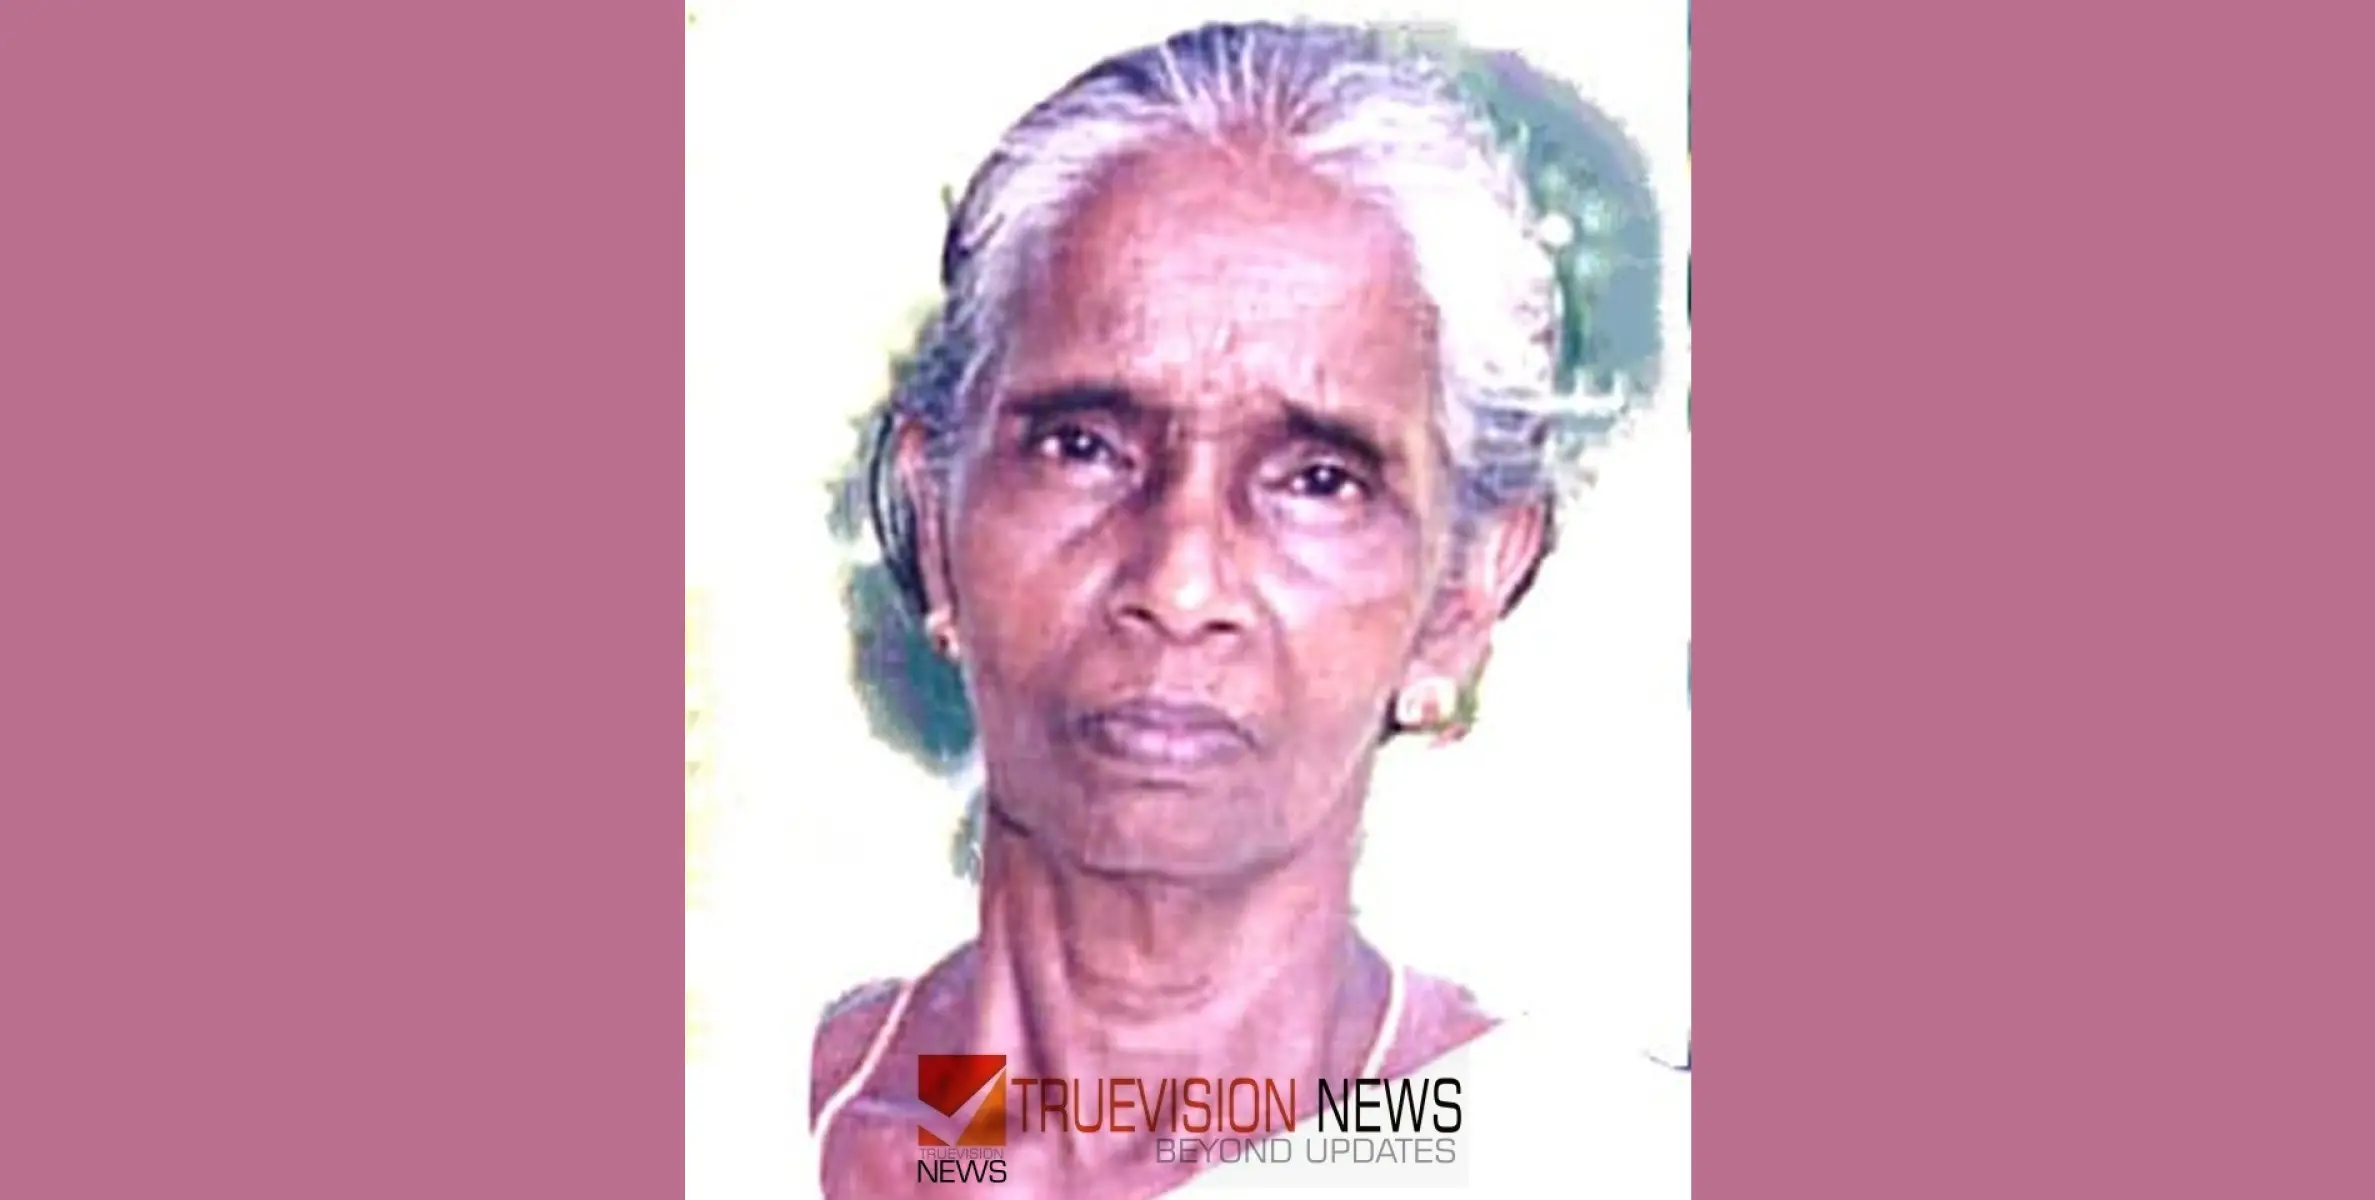 #obituary|മണിയം കുന്നുമ്മൽ മാതു (കല്യാണി) അന്തരിച്ചു 